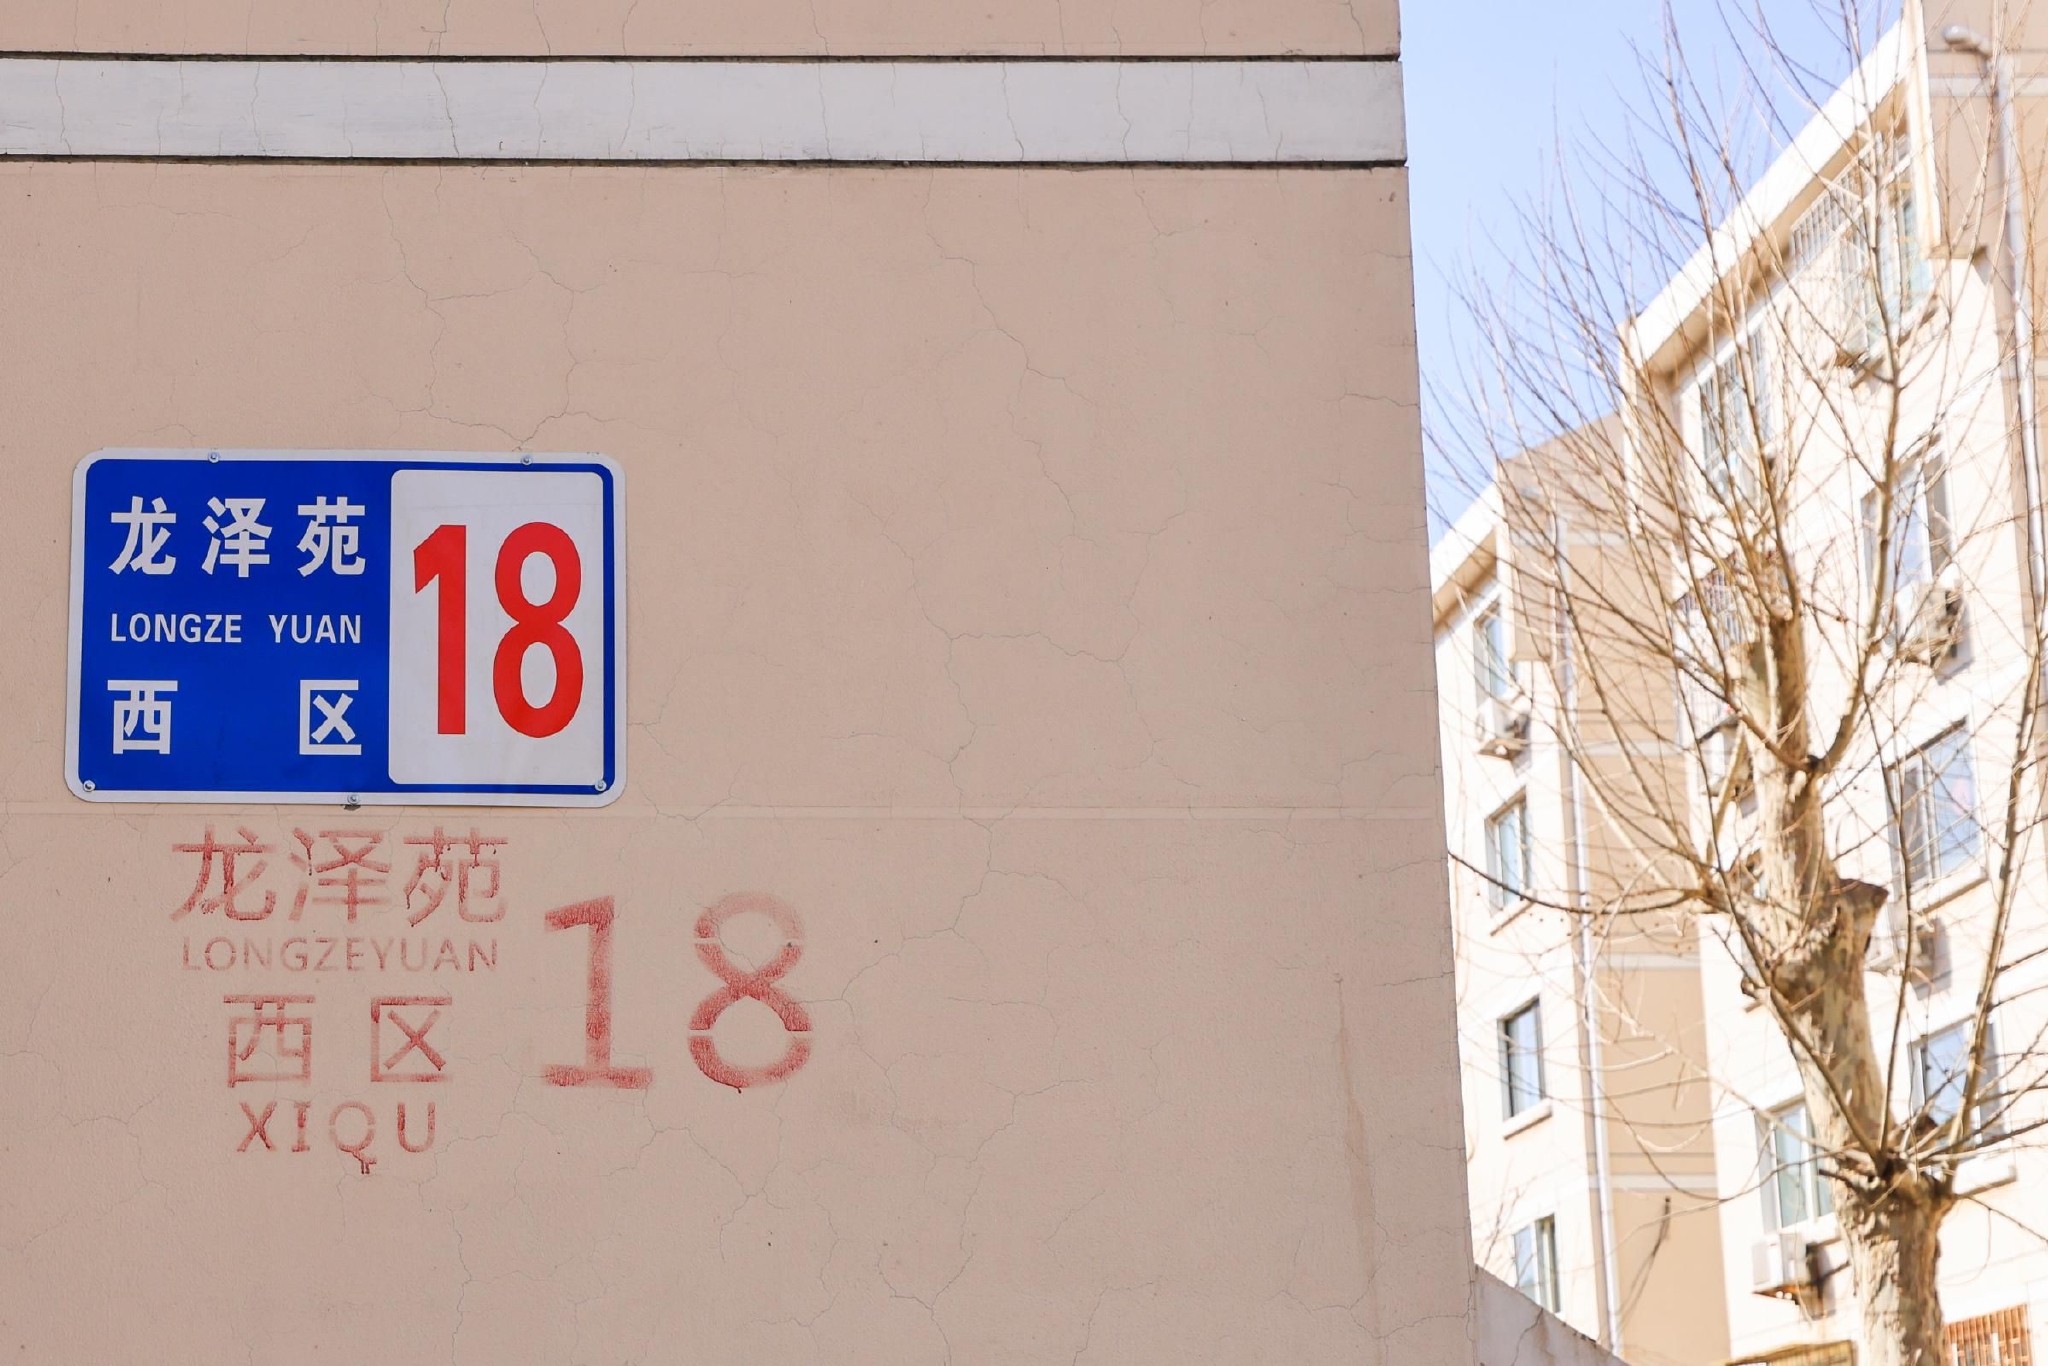 外卖小哥一通电话,北京这个小区154个单元楼装上新号牌